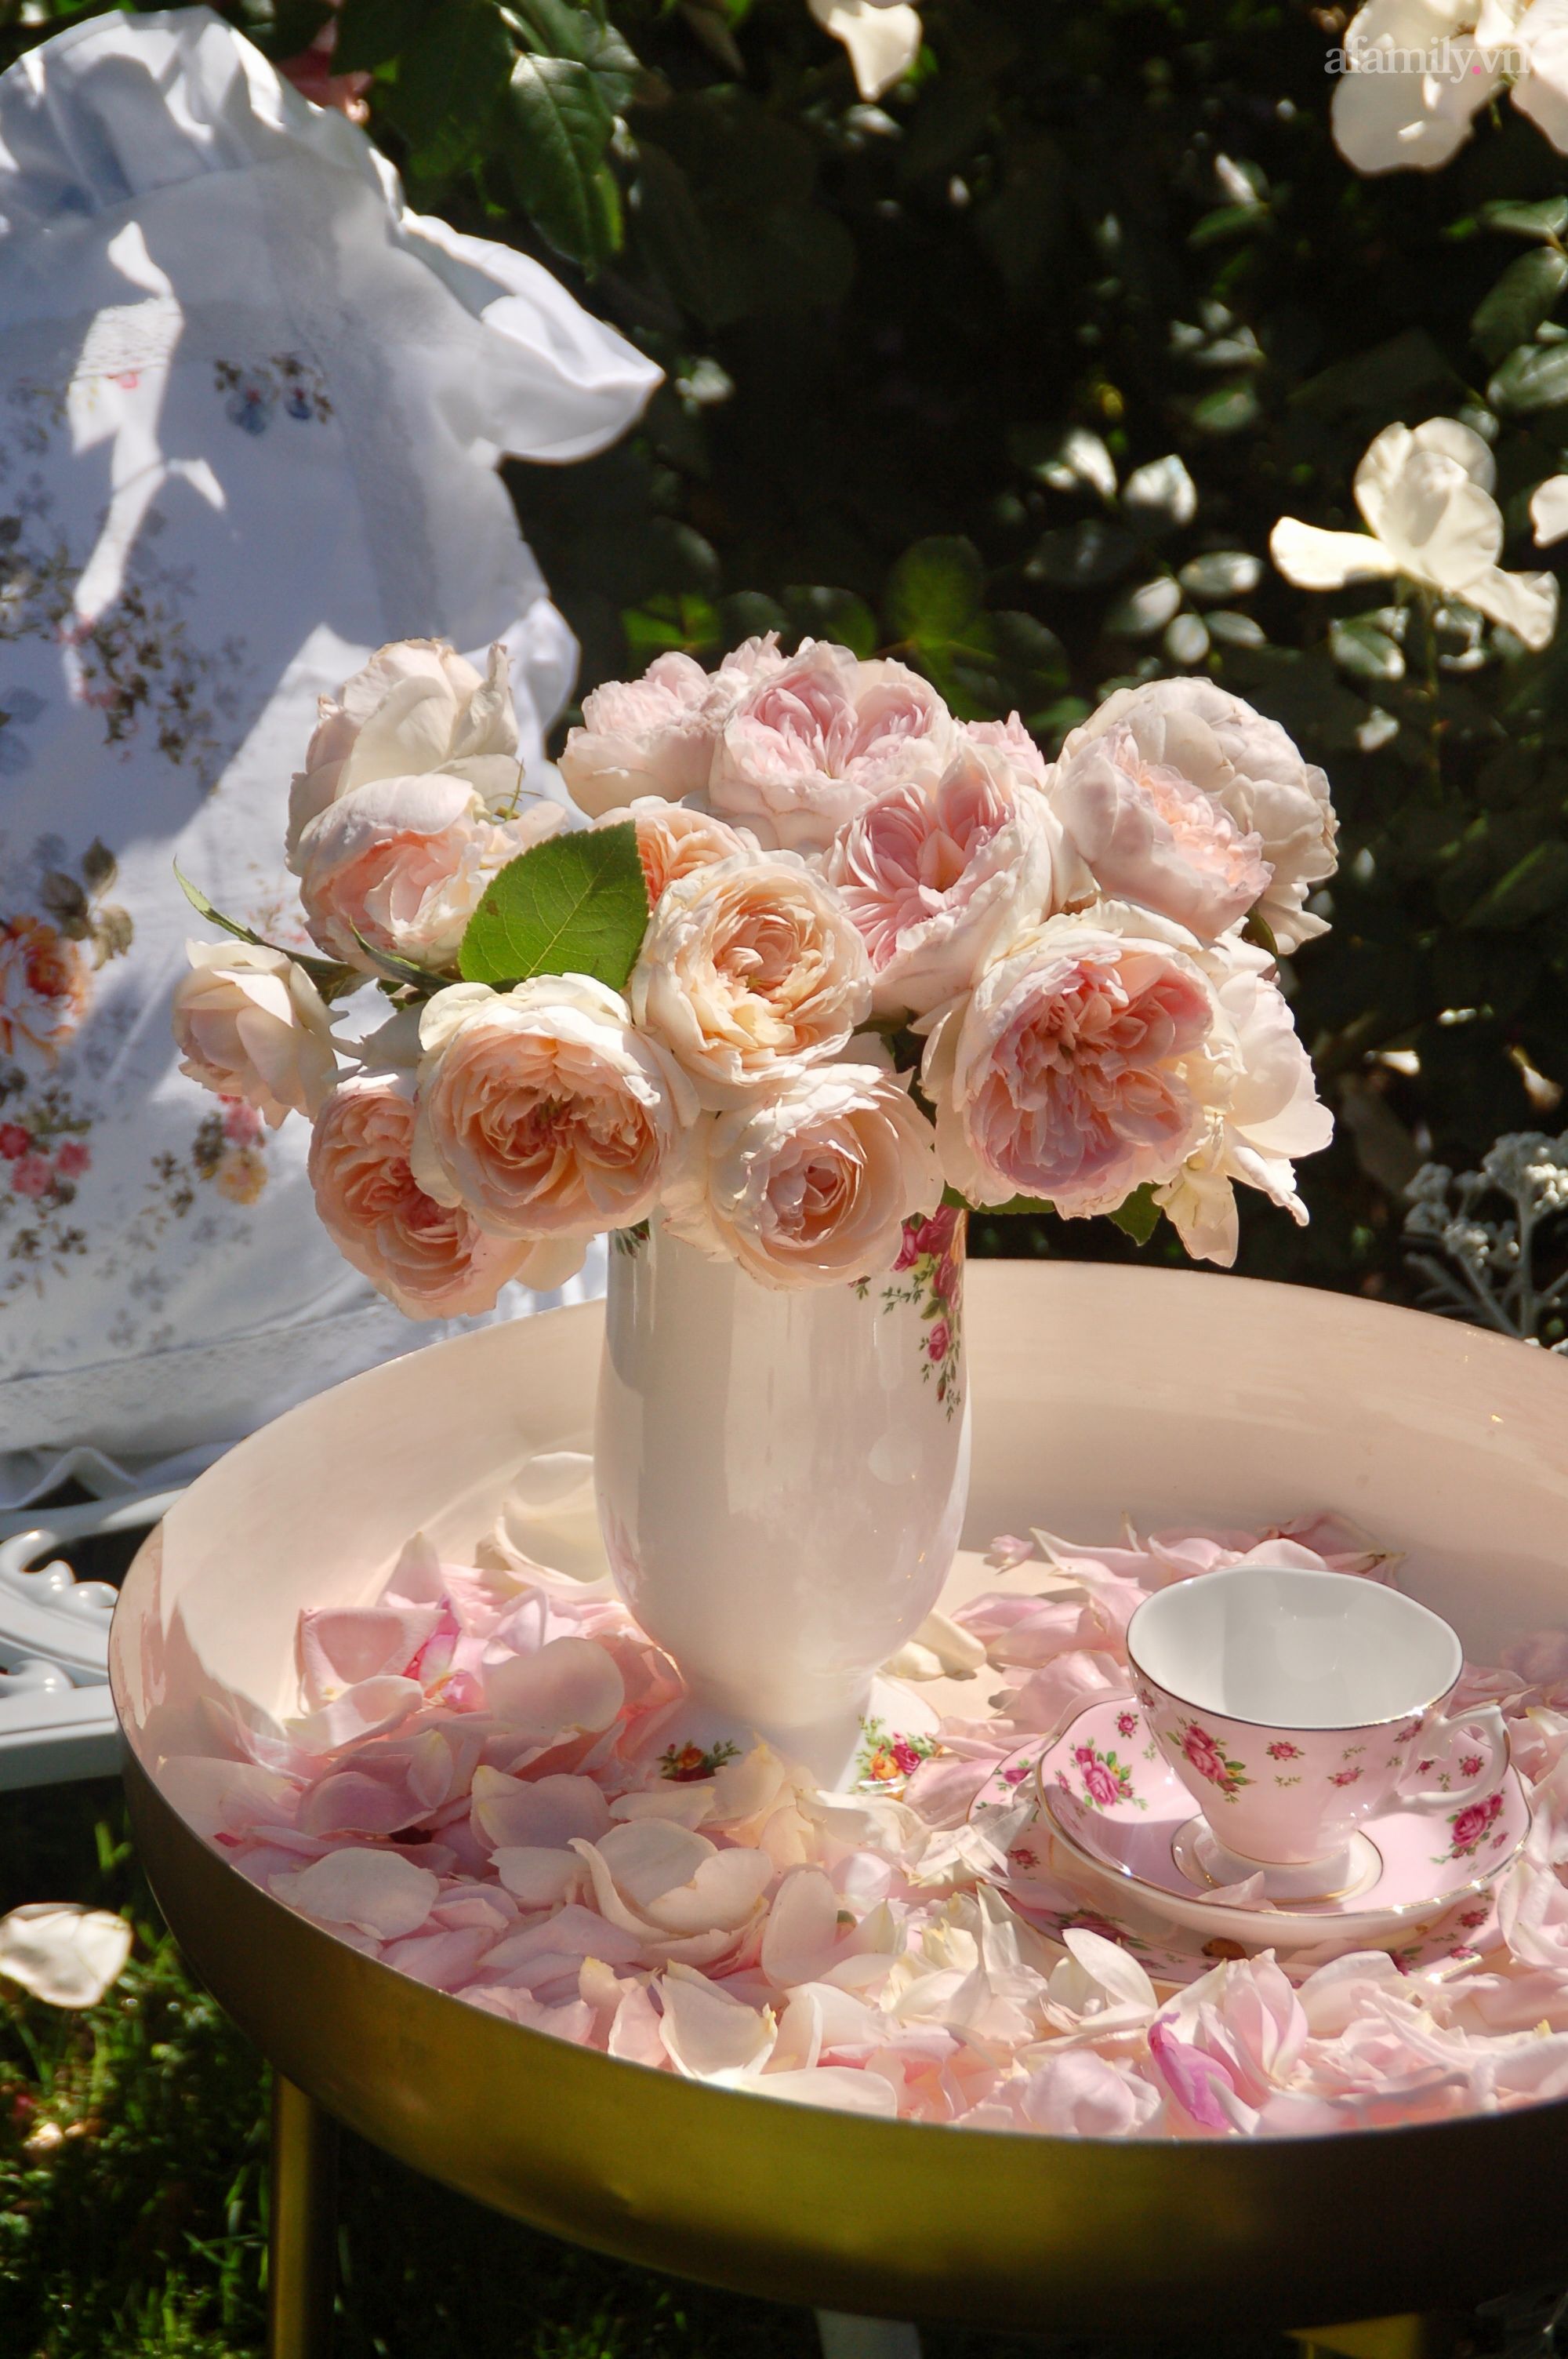 Hãy chiêm ngưỡng những bông hoa hồng ngất ngây trong hình ảnh này. Đẹp mê hồn, nồng nàn cùng hương thơm đặc trưng. Một tác phẩm nghệ thuật bằng hoa sẽ đắm say bạn ngay từ cái nhìn đầu tiên!